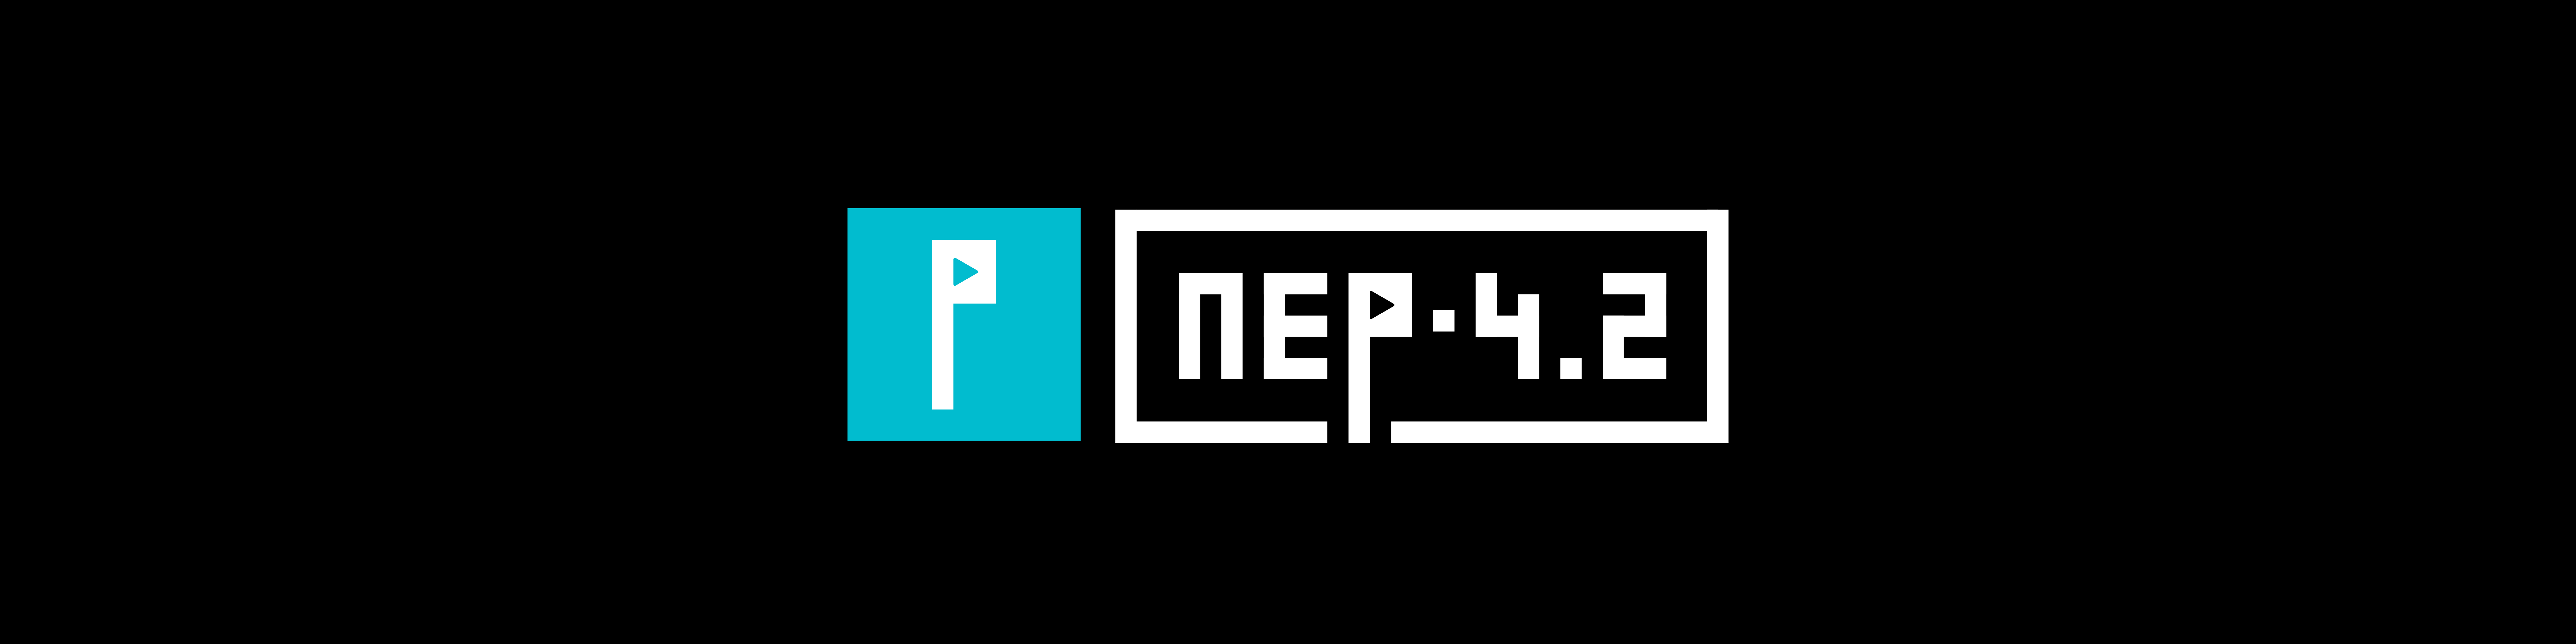 NEP 4.2